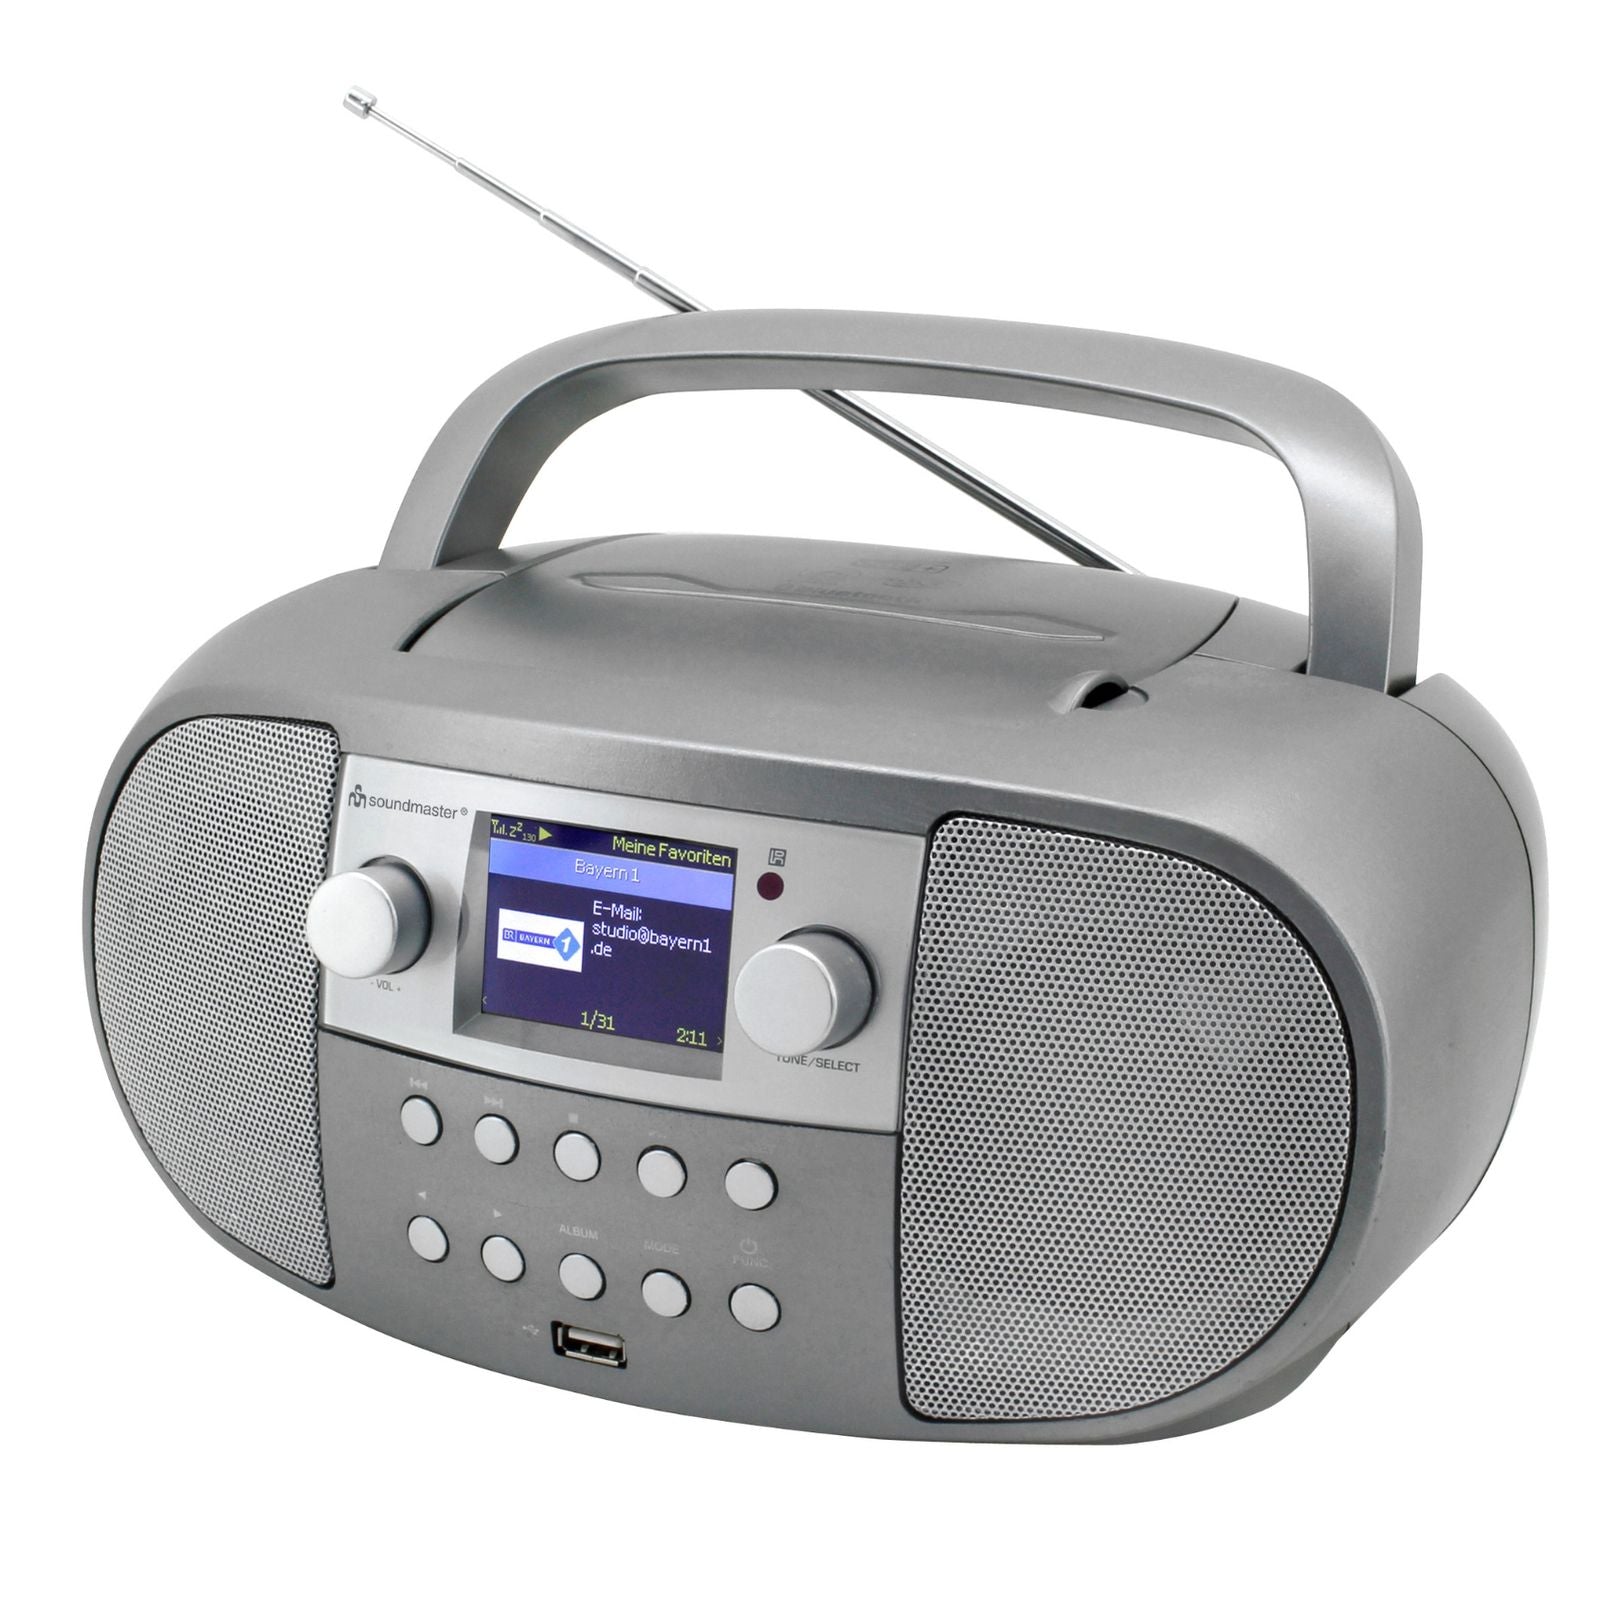 Soundmaster SCD7600TI Boombox Radio Internet Radio réseau WLAN DLNA Bluetooth DAB+ CD USB MP3 Fonction réveil Fonction livre audio Écran couleur